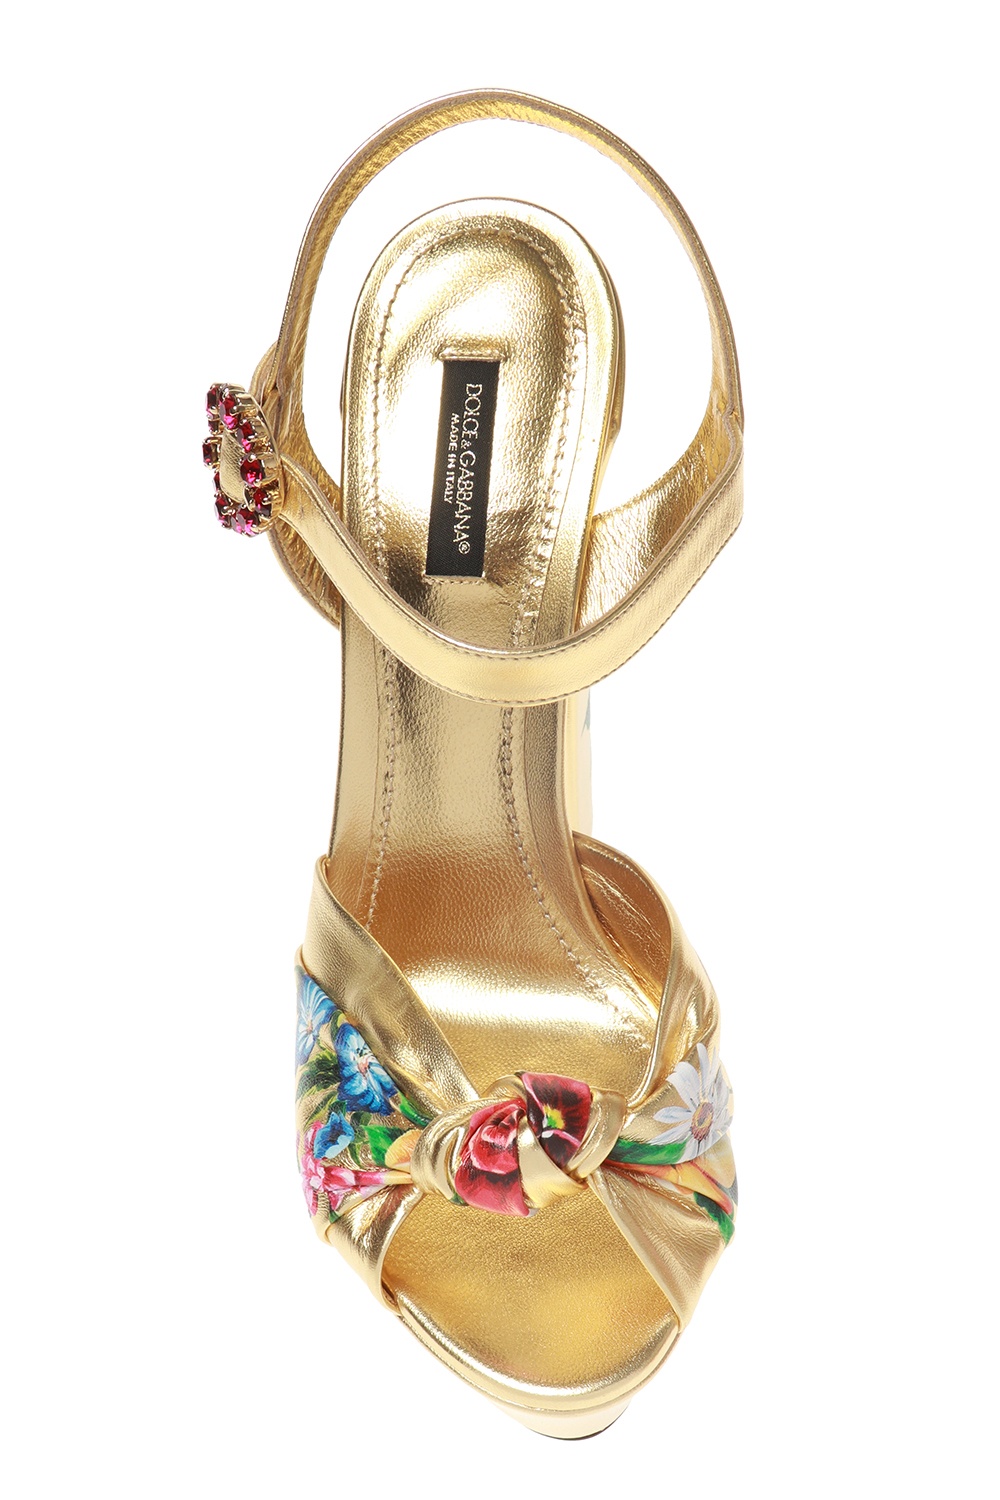 Gold Floral-printed platform sandals Dolce & Gabbana - Vitkac France